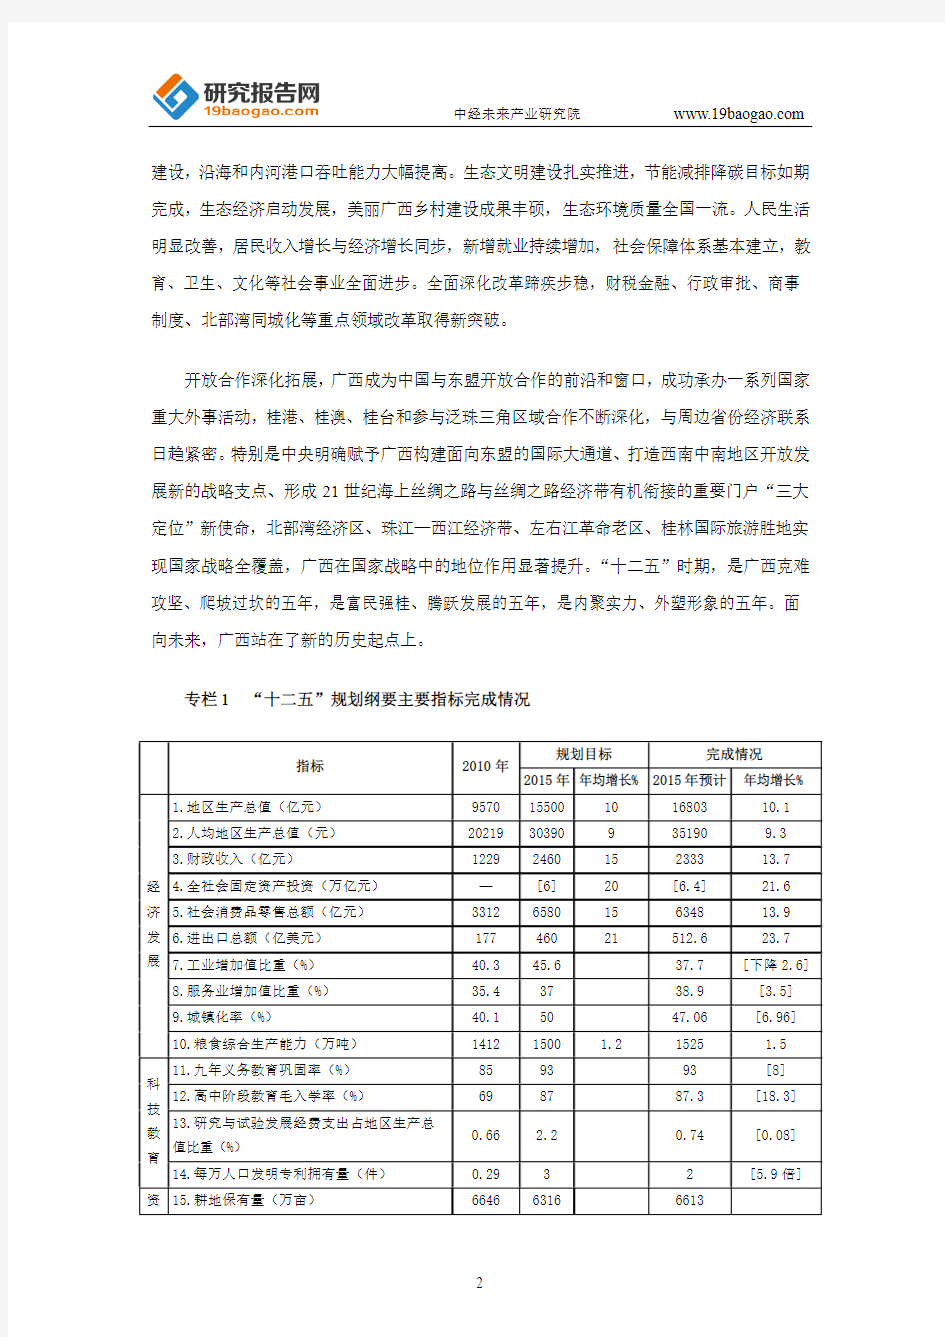 广西壮族自治区国民经济和社会发展第十三个五年规划纲要